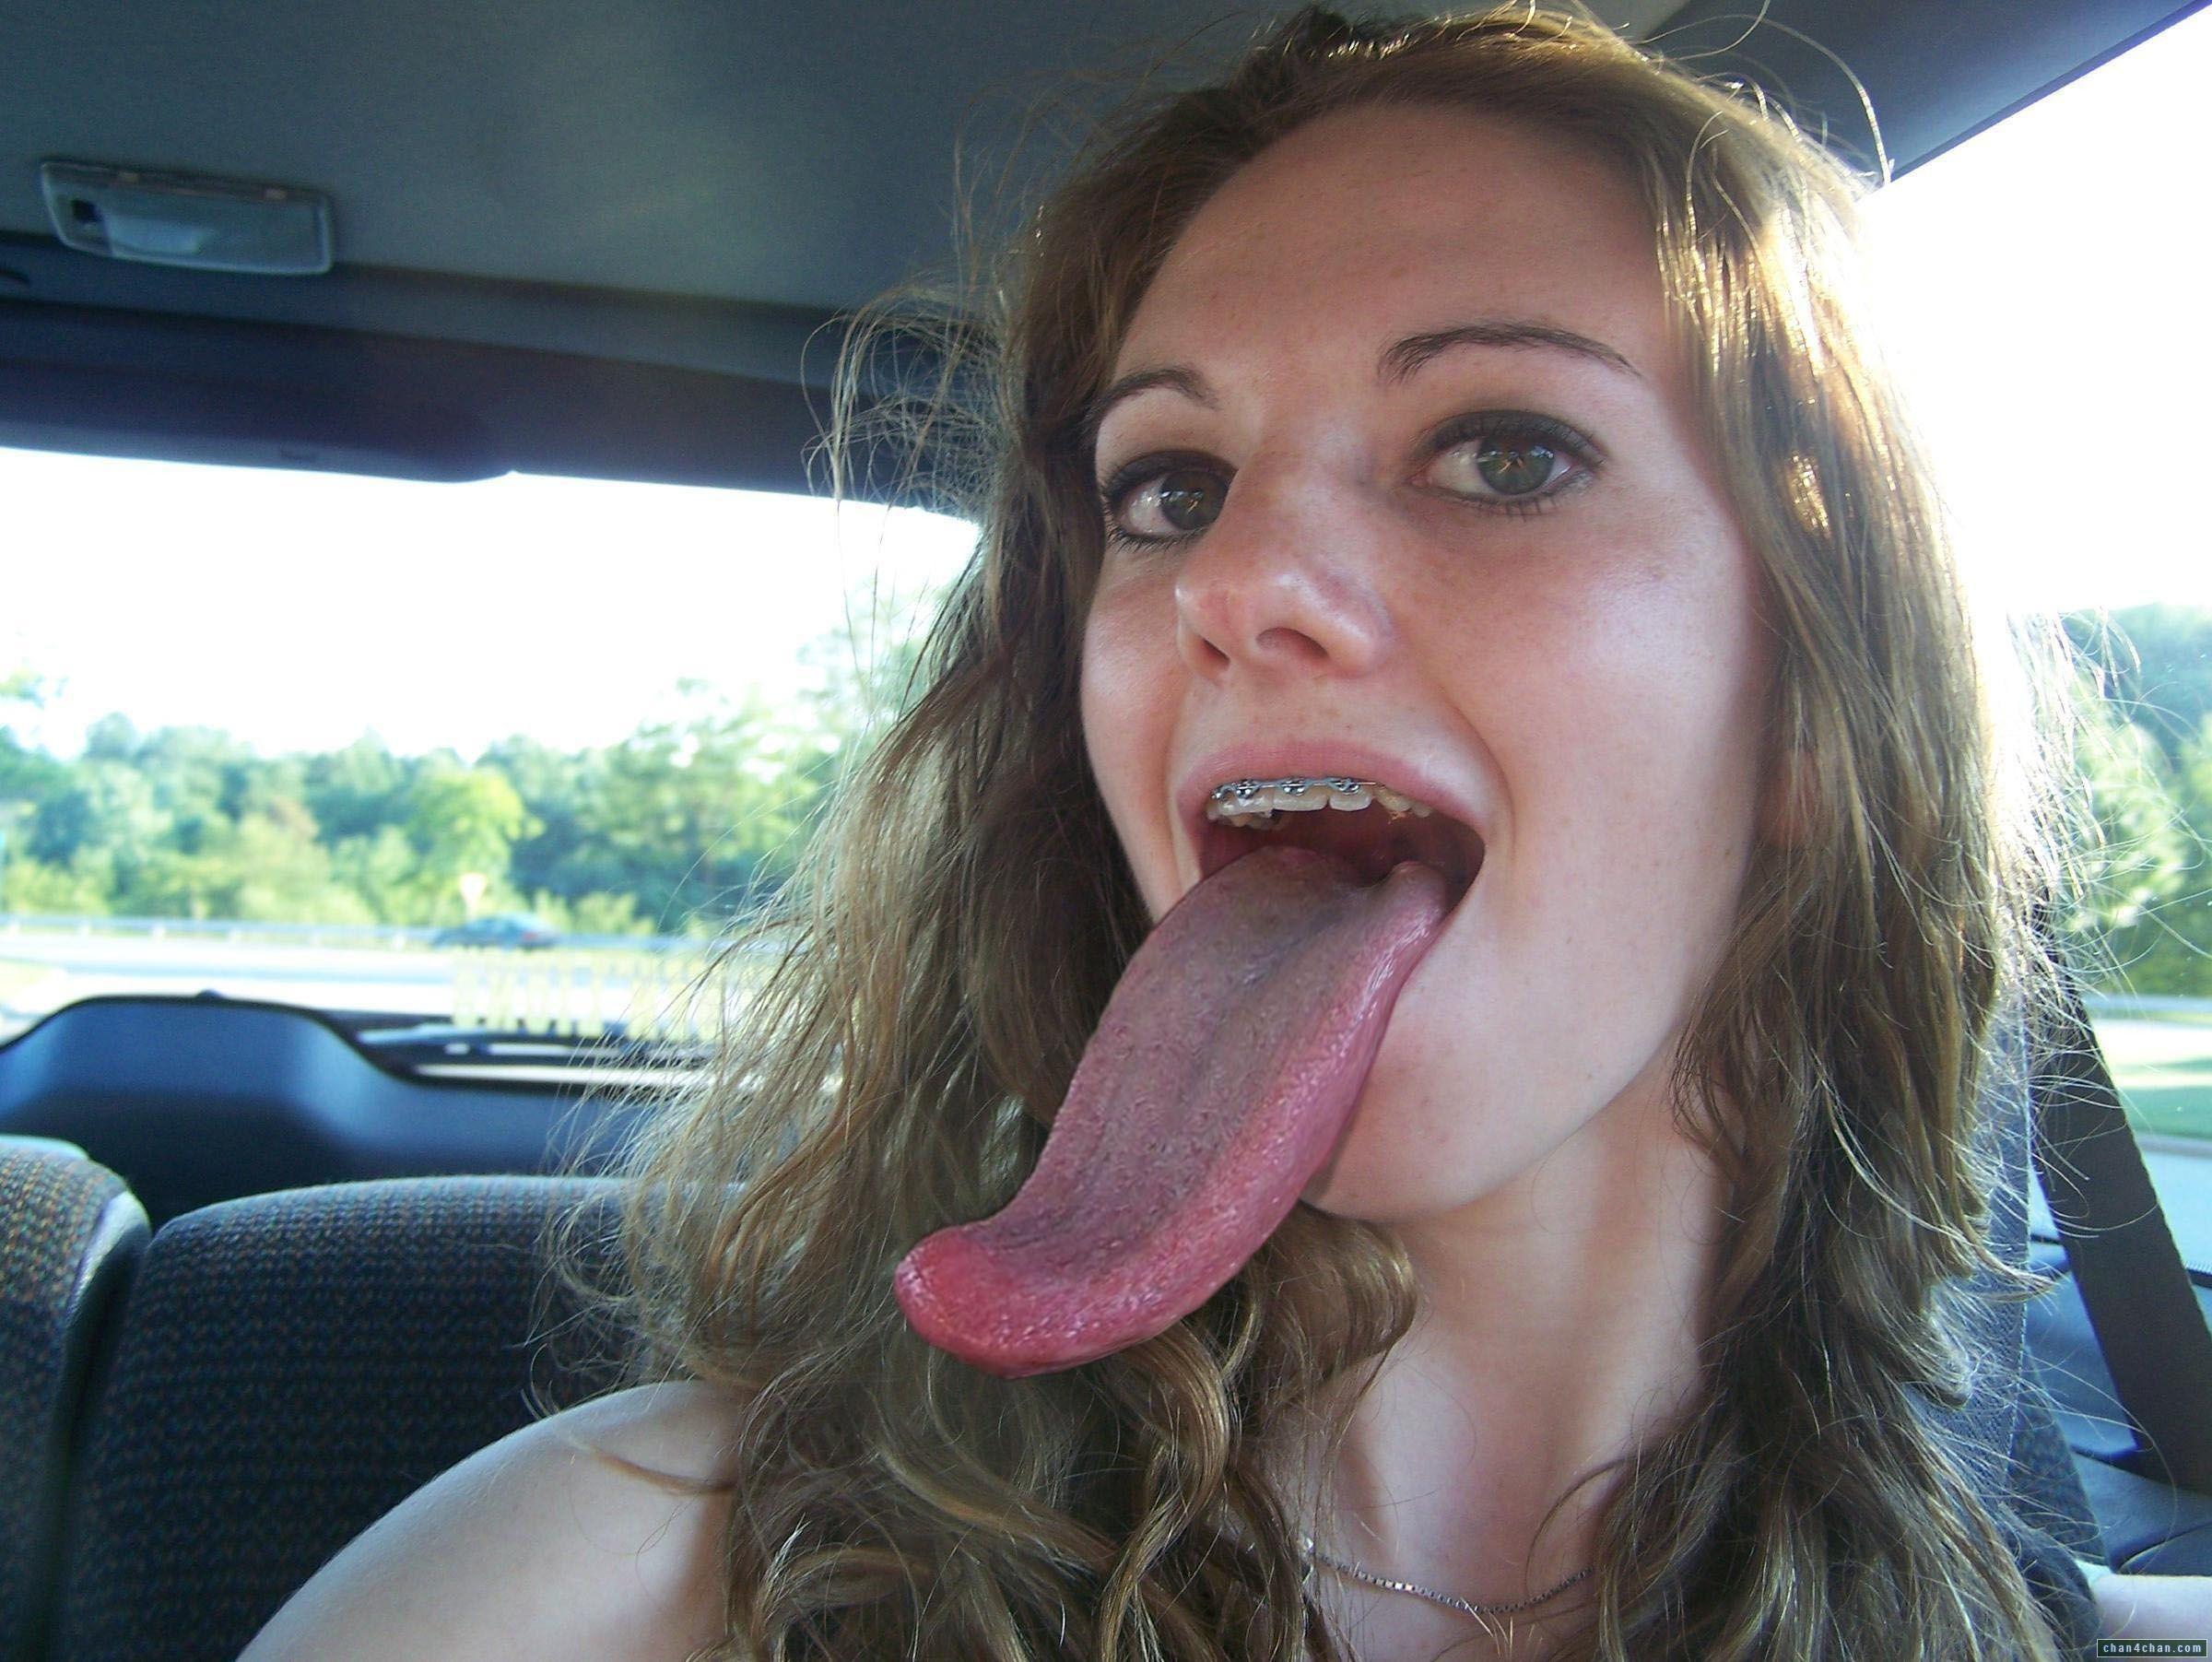 Cali reccomend deepthroat bj girl hd tongue pics Teen